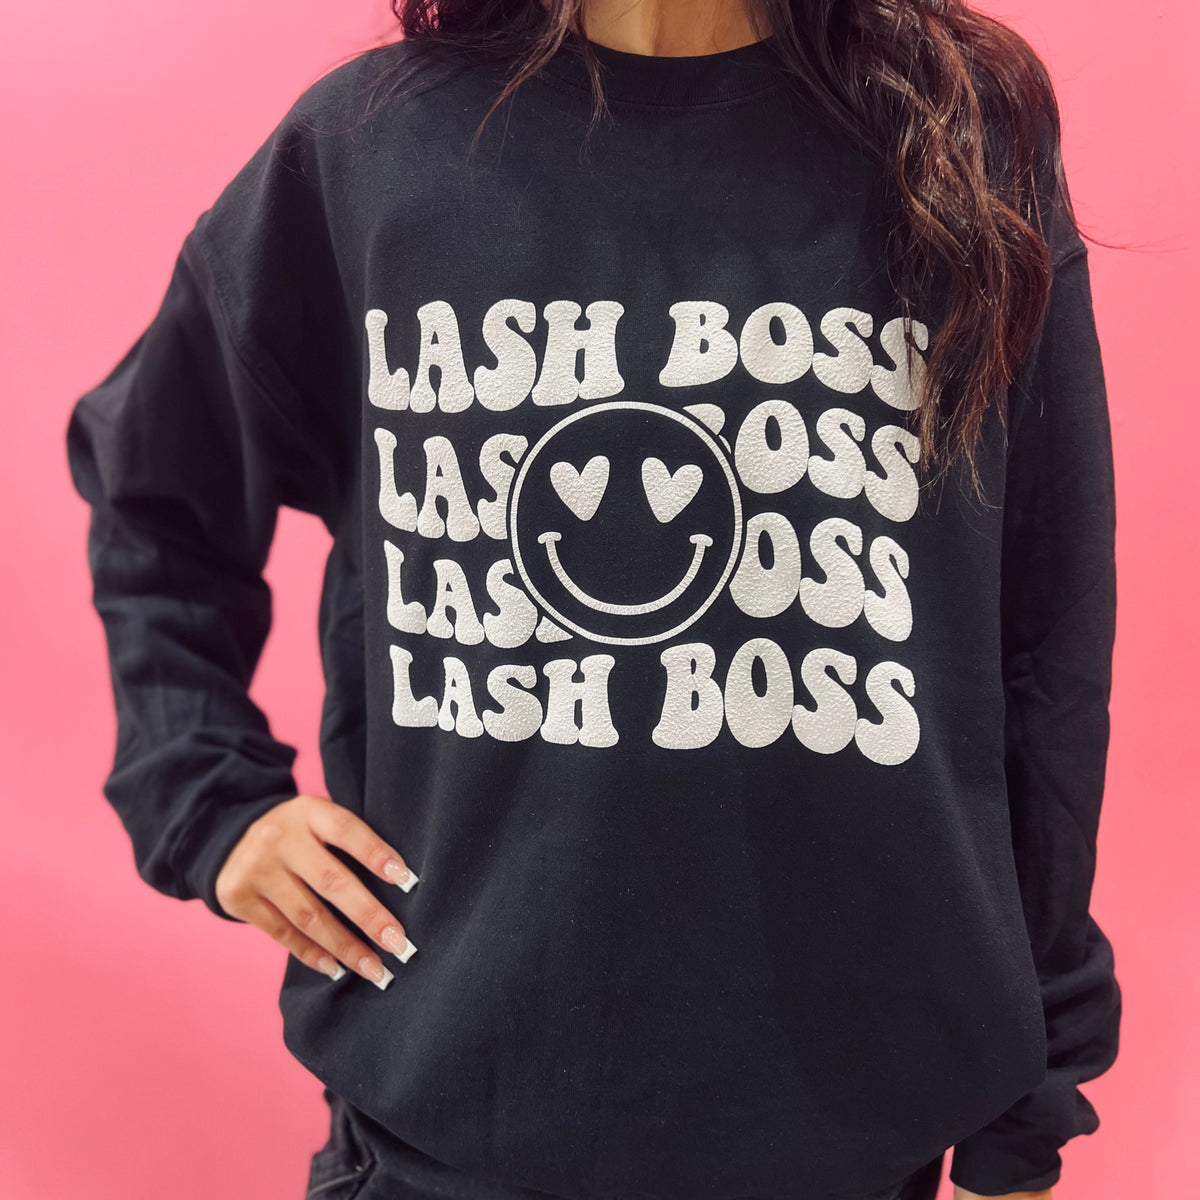 Lash Boss (with smiley face) - Crewneck Sweatshirt